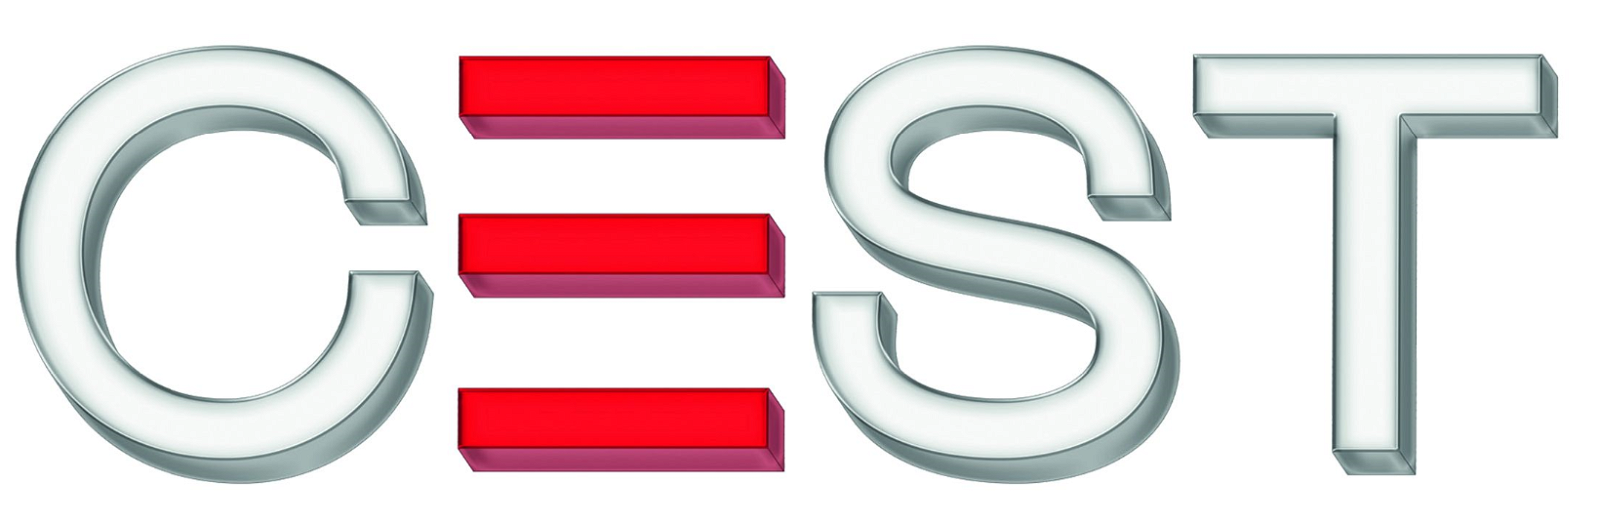 Senior Researcher - CEST Kompetenzzentrum für elektrochem. Oberflächentechnologie GmbH - Logo